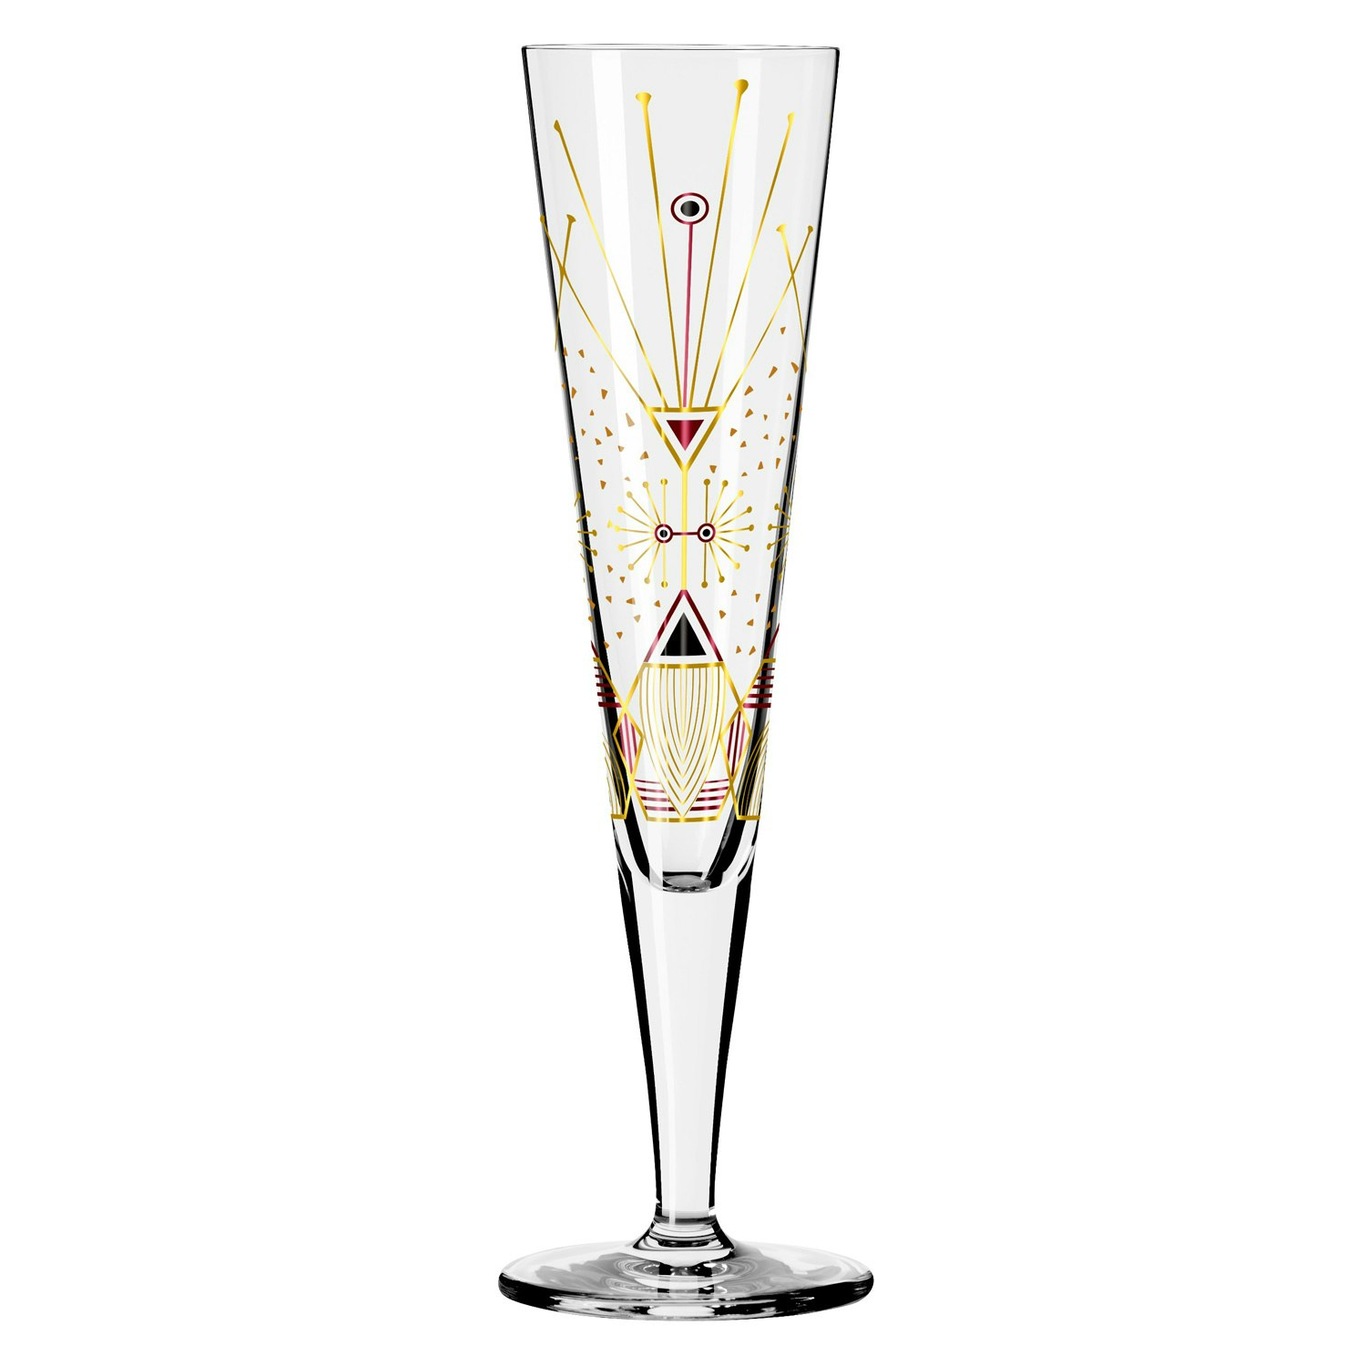 Goldnacht Champagne @ Ritzenhoff RoyalDesign Glass, 25 NO: 